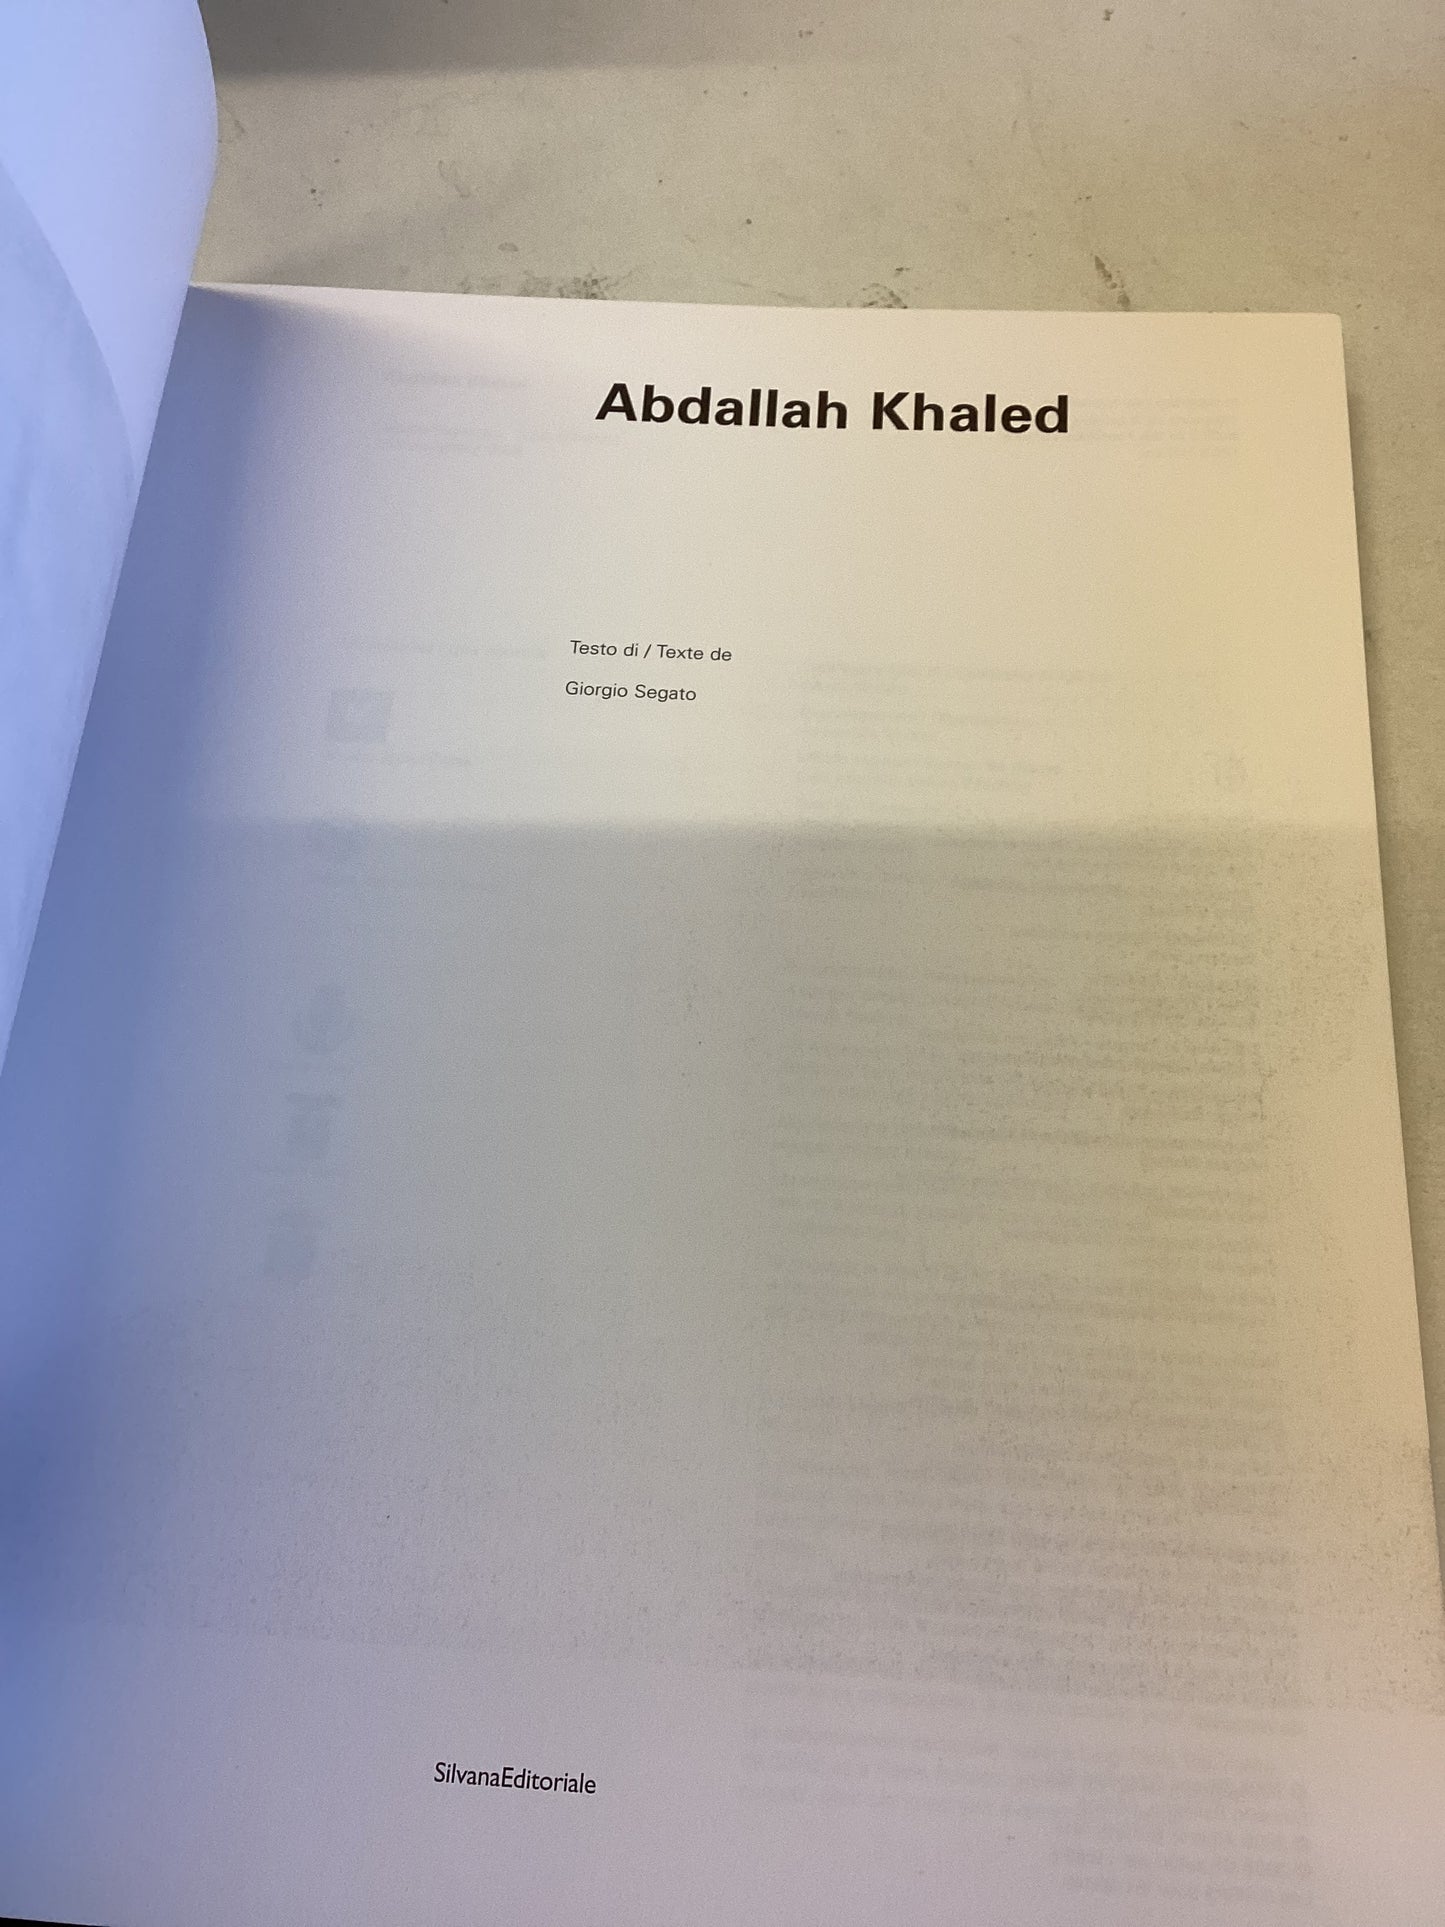 Abdallah Khaled